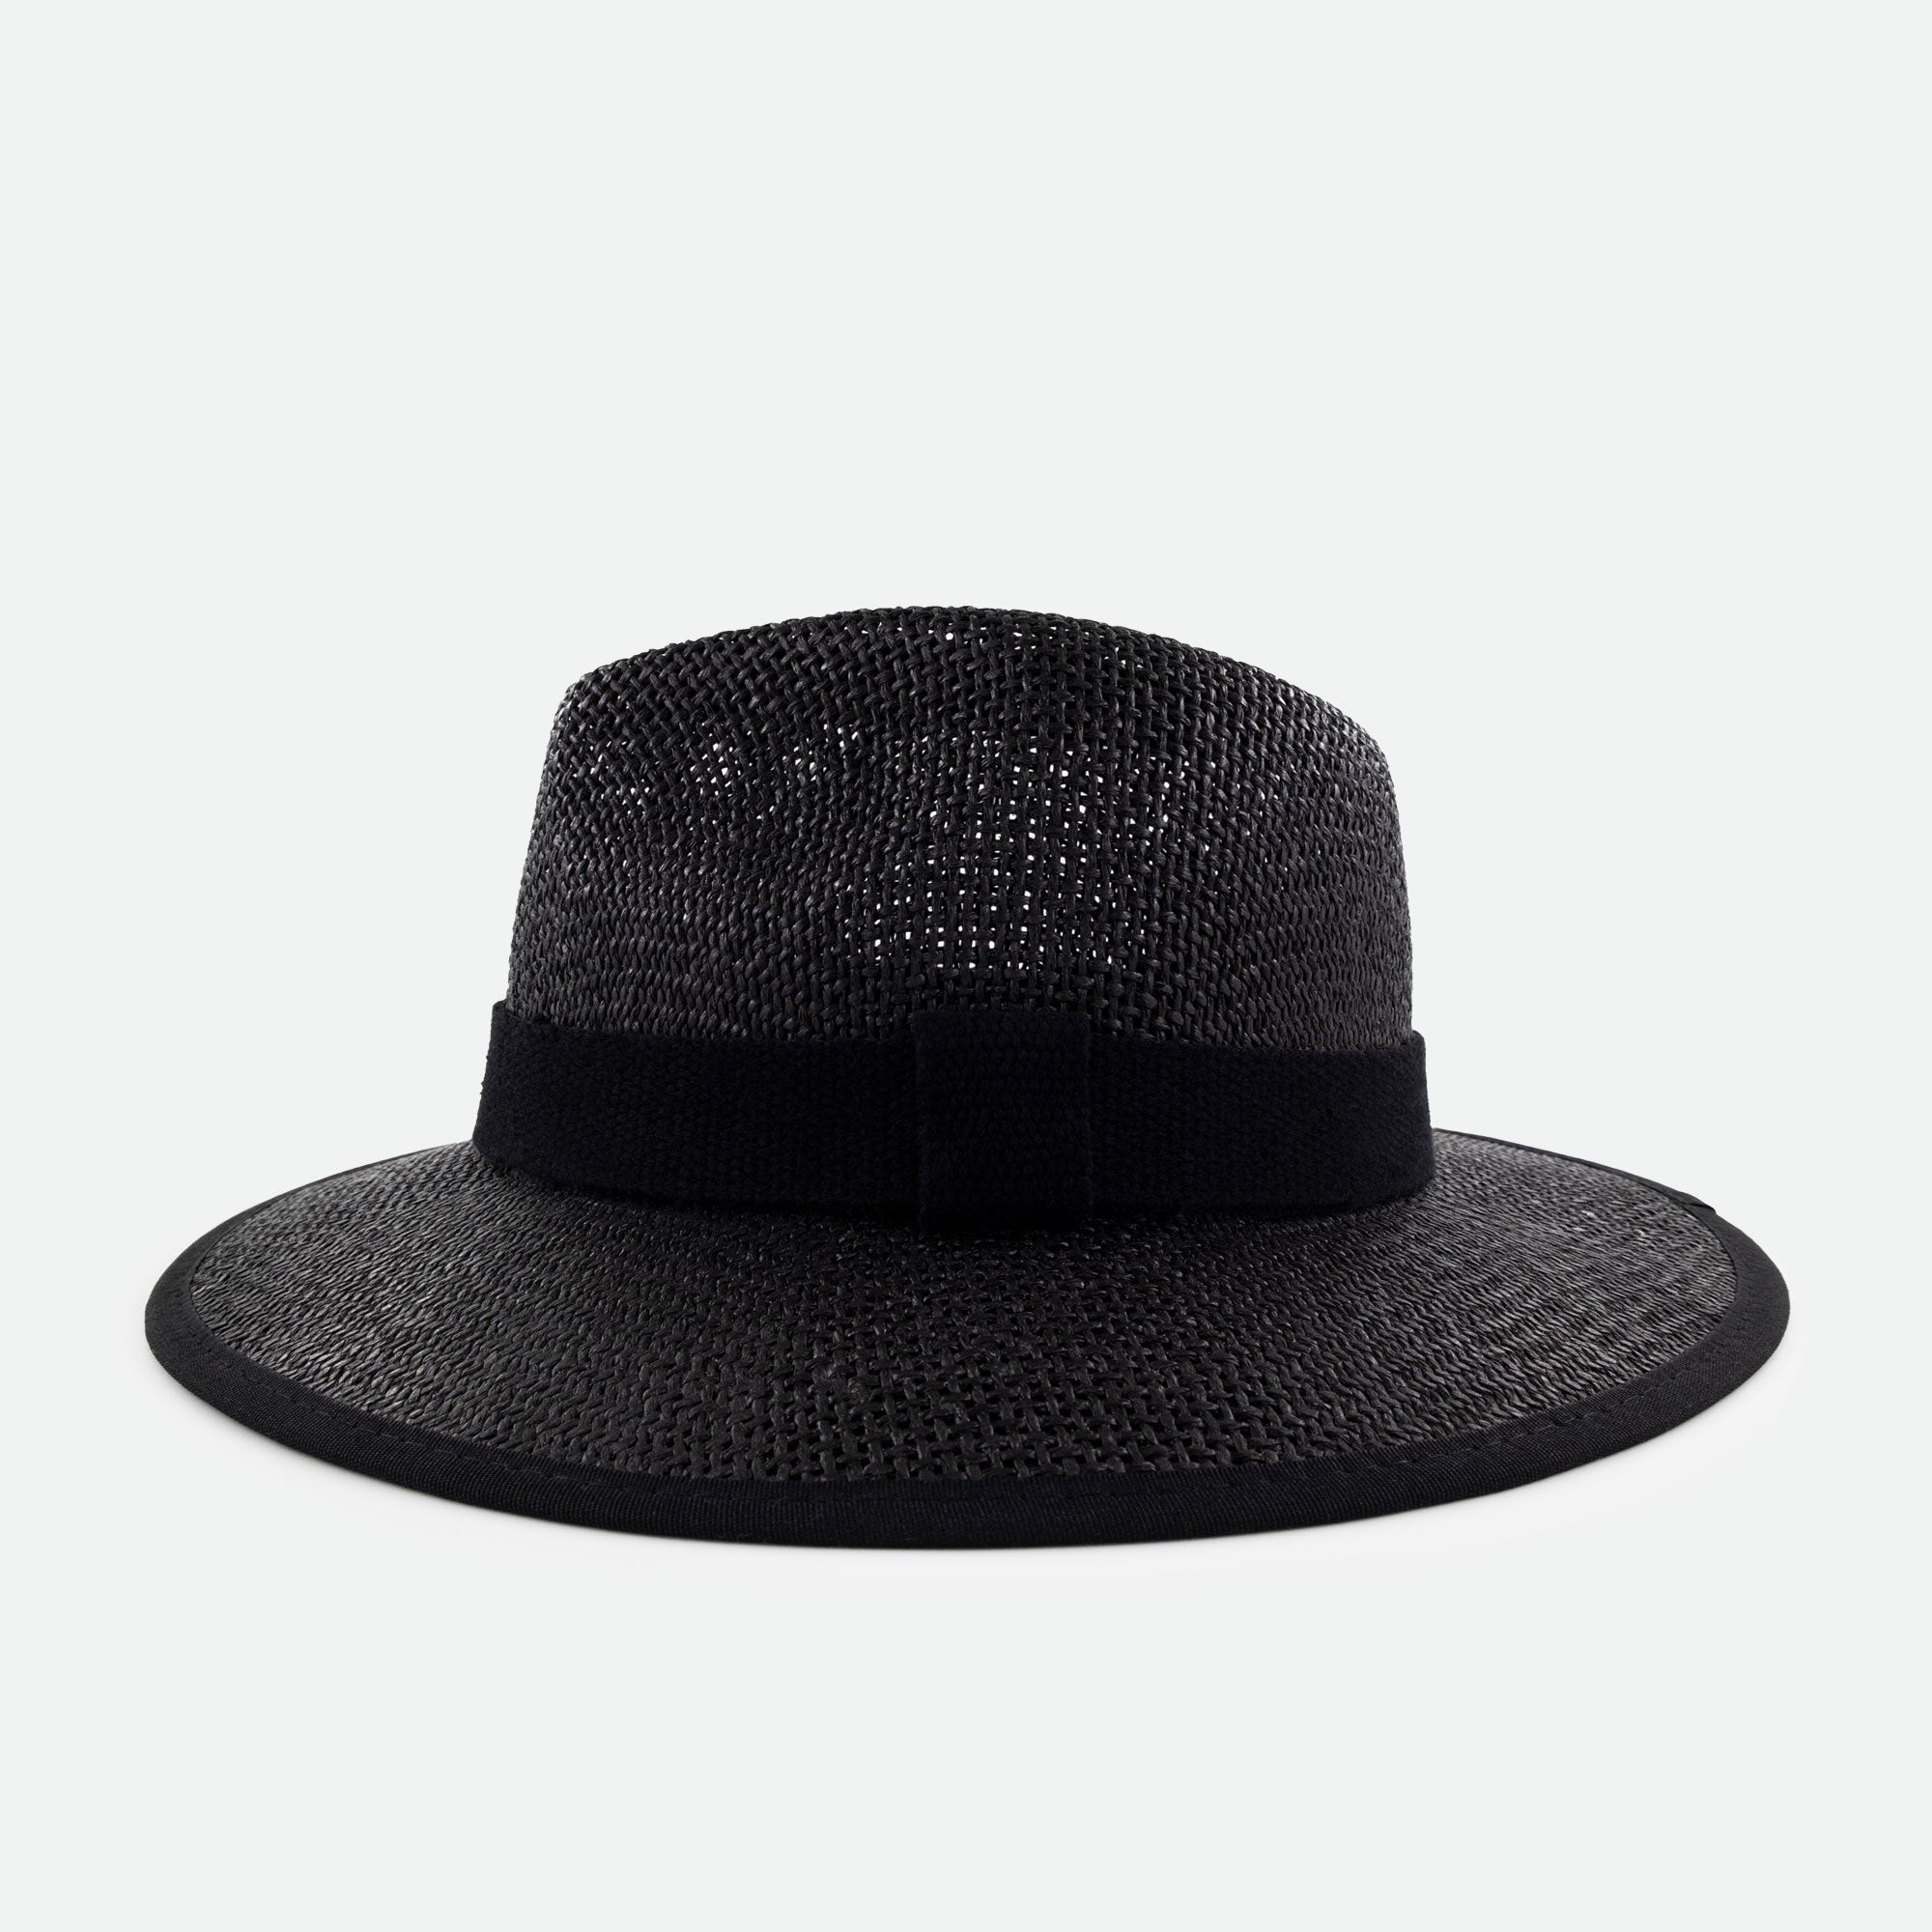 Michrame Straw Panama Hat Nero- Hasır Şapka